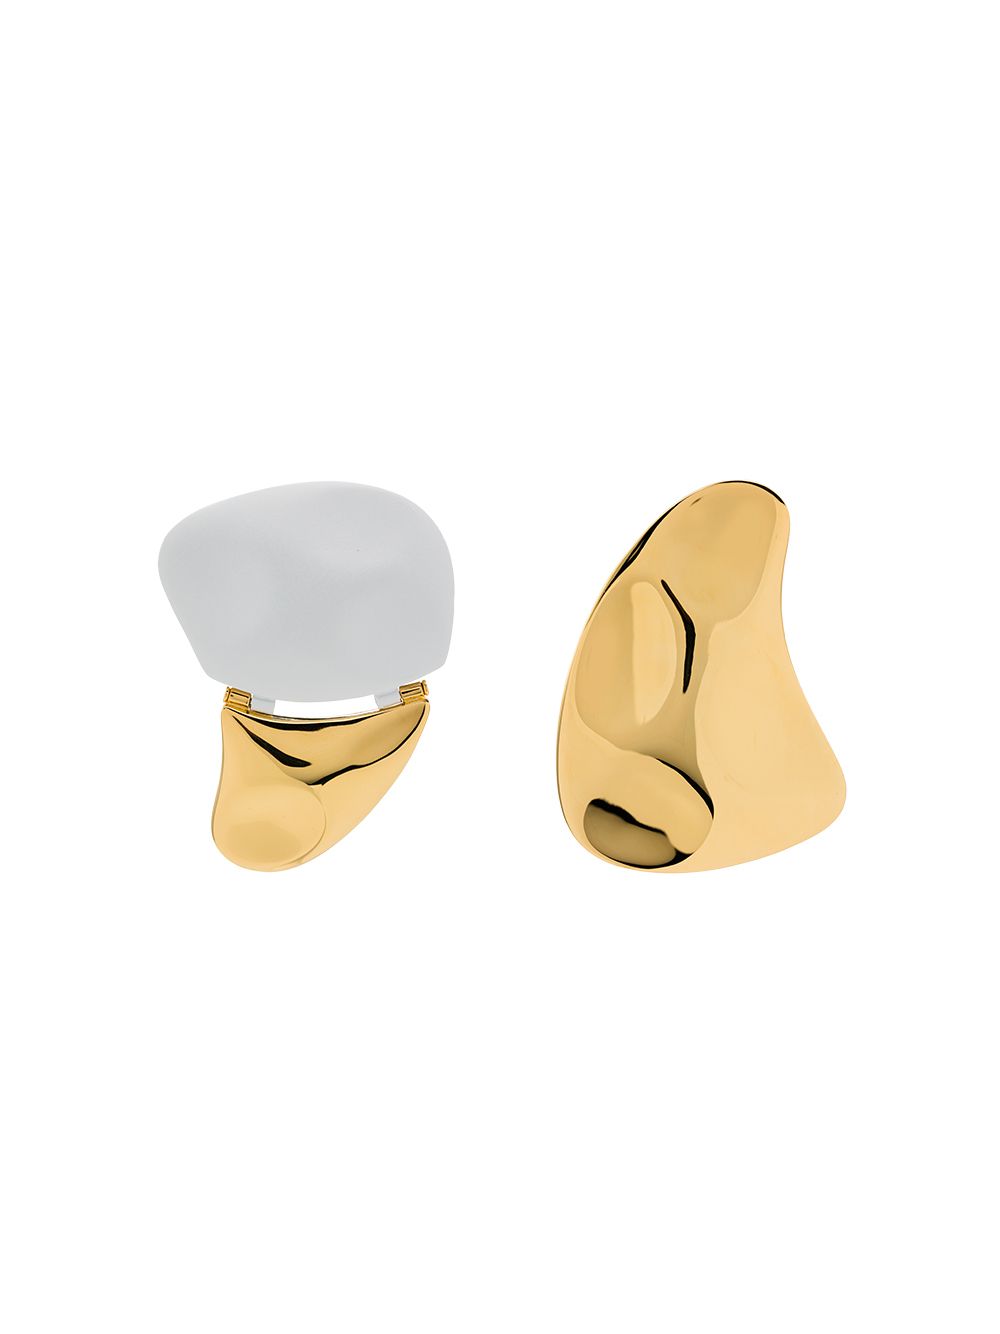 NAUSHEEN SHAH X MONICA SORDO 24KT GOLD-PLATED EARRINGS